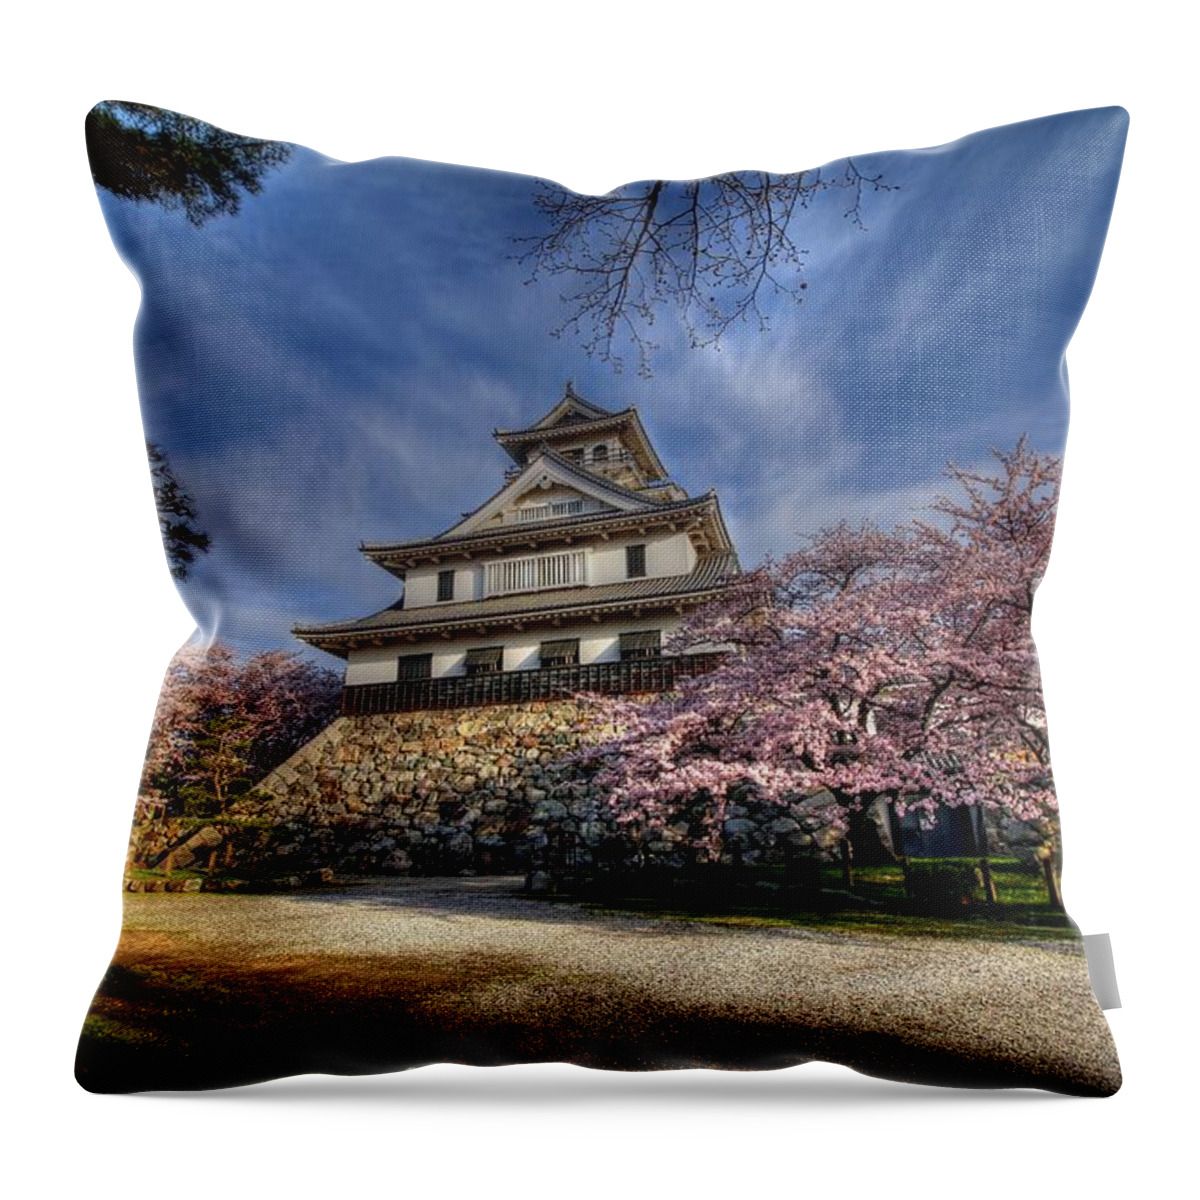 Nagahama Japan Throw Pillow featuring the photograph Nagahama Japan #7 by Paul James Bannerman